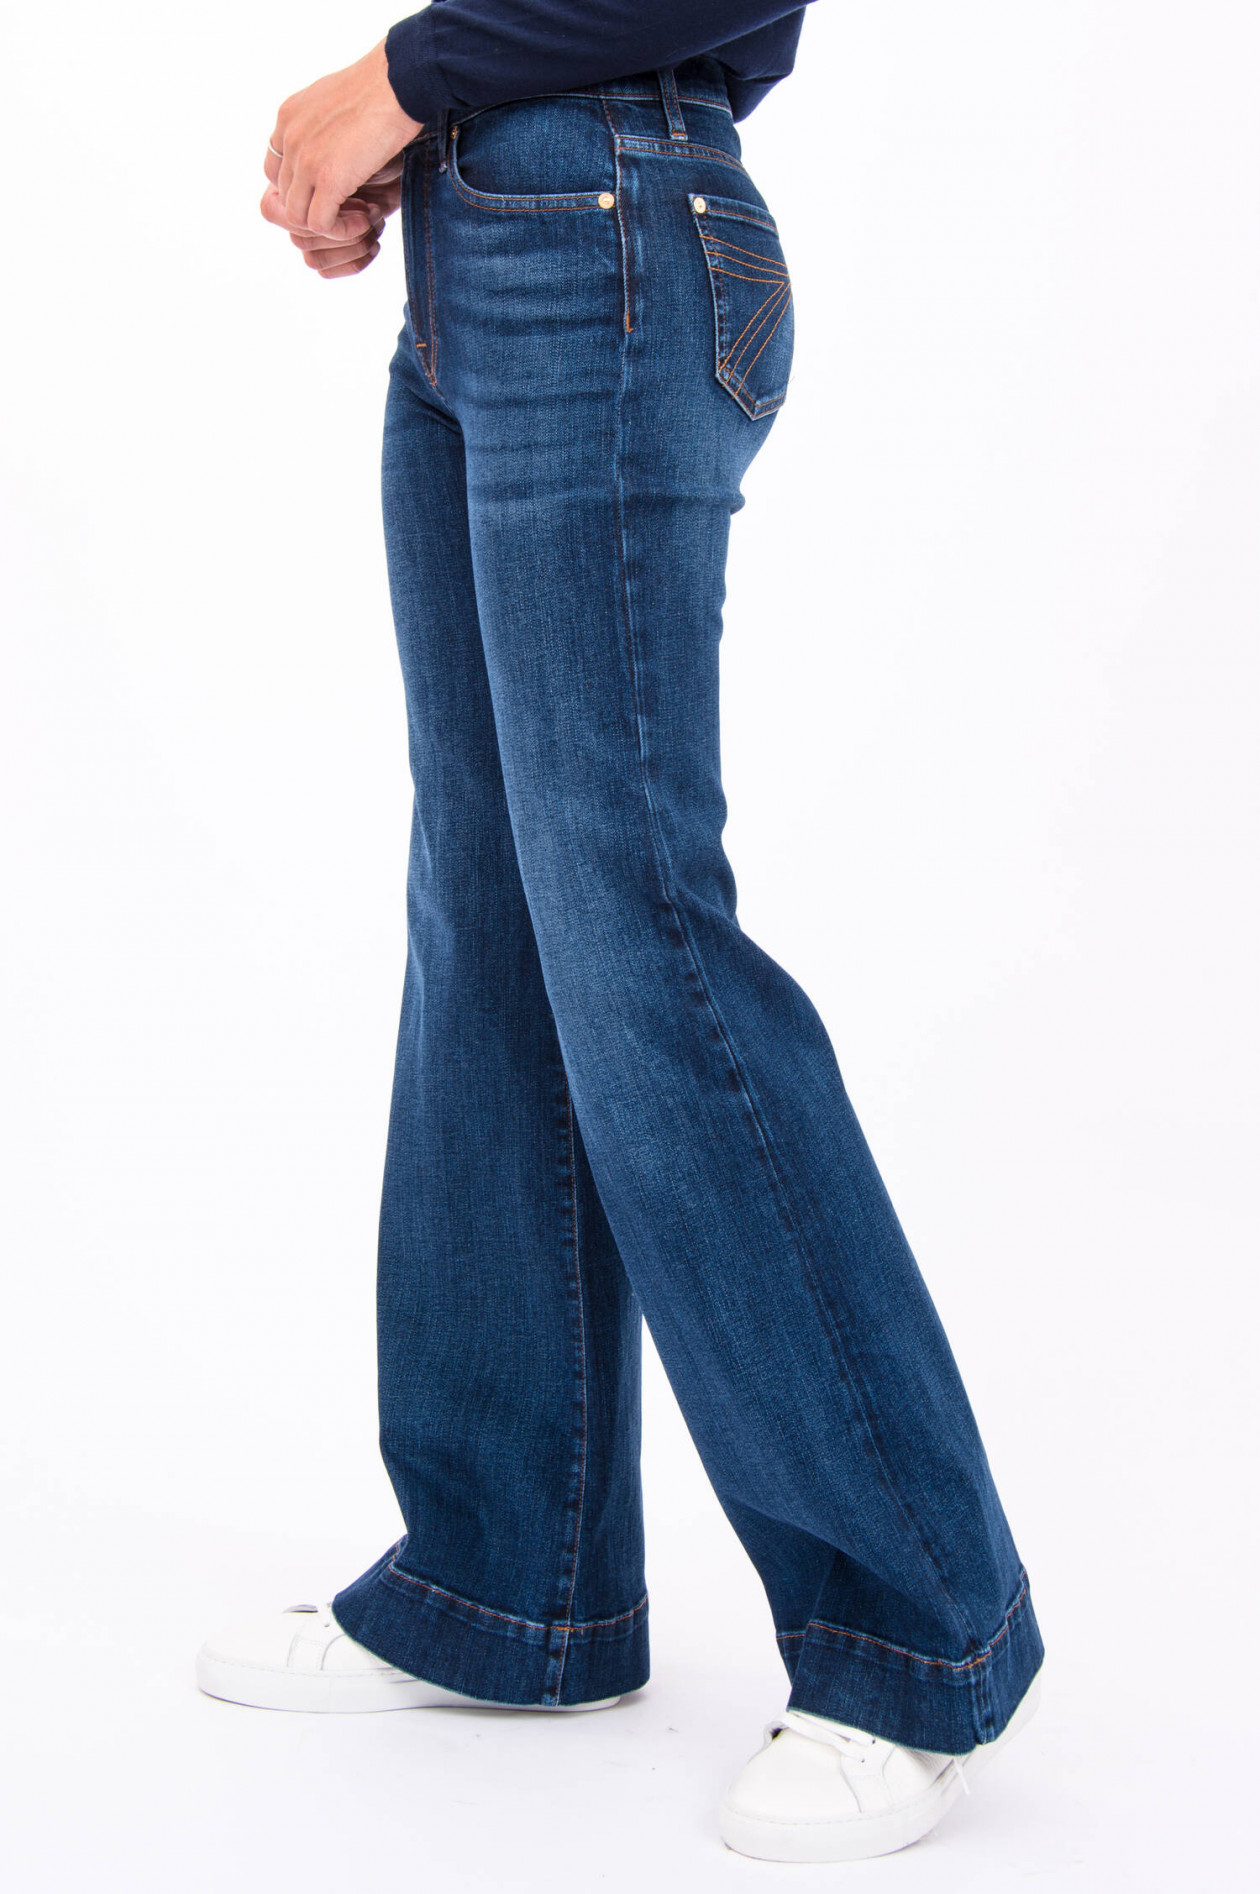 Damen Bekleidung Jeans Ausgestellte Jeans 7 For All Mankind Denim Weite Modern Dojo Hero Jeans in Blau 